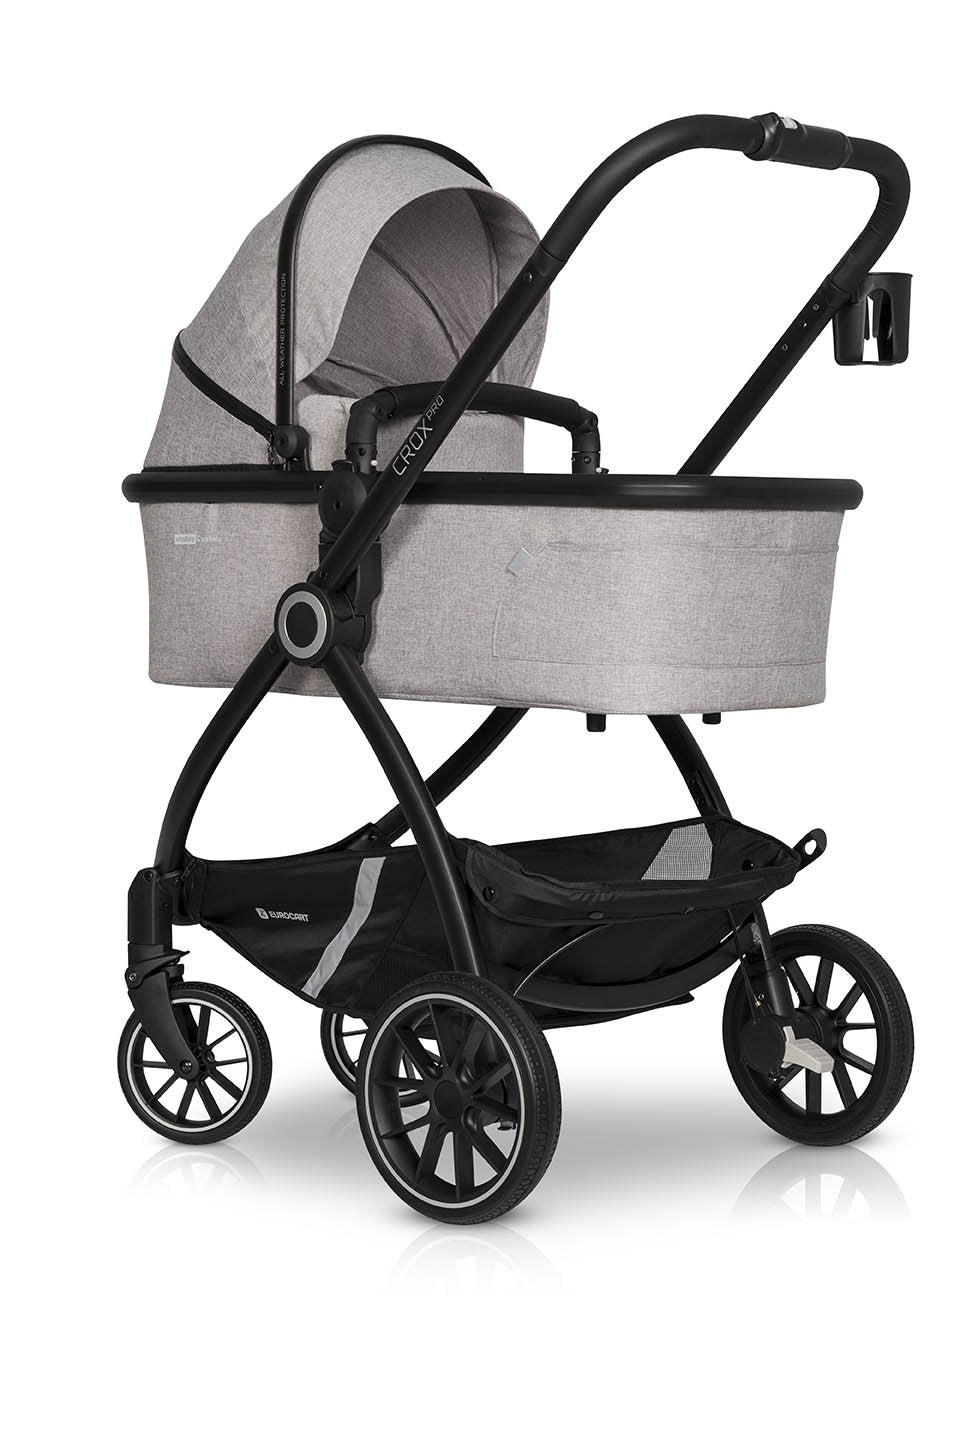 Euro-cart CROX PRO 3in1 | Pearl - Hula Hula Baby